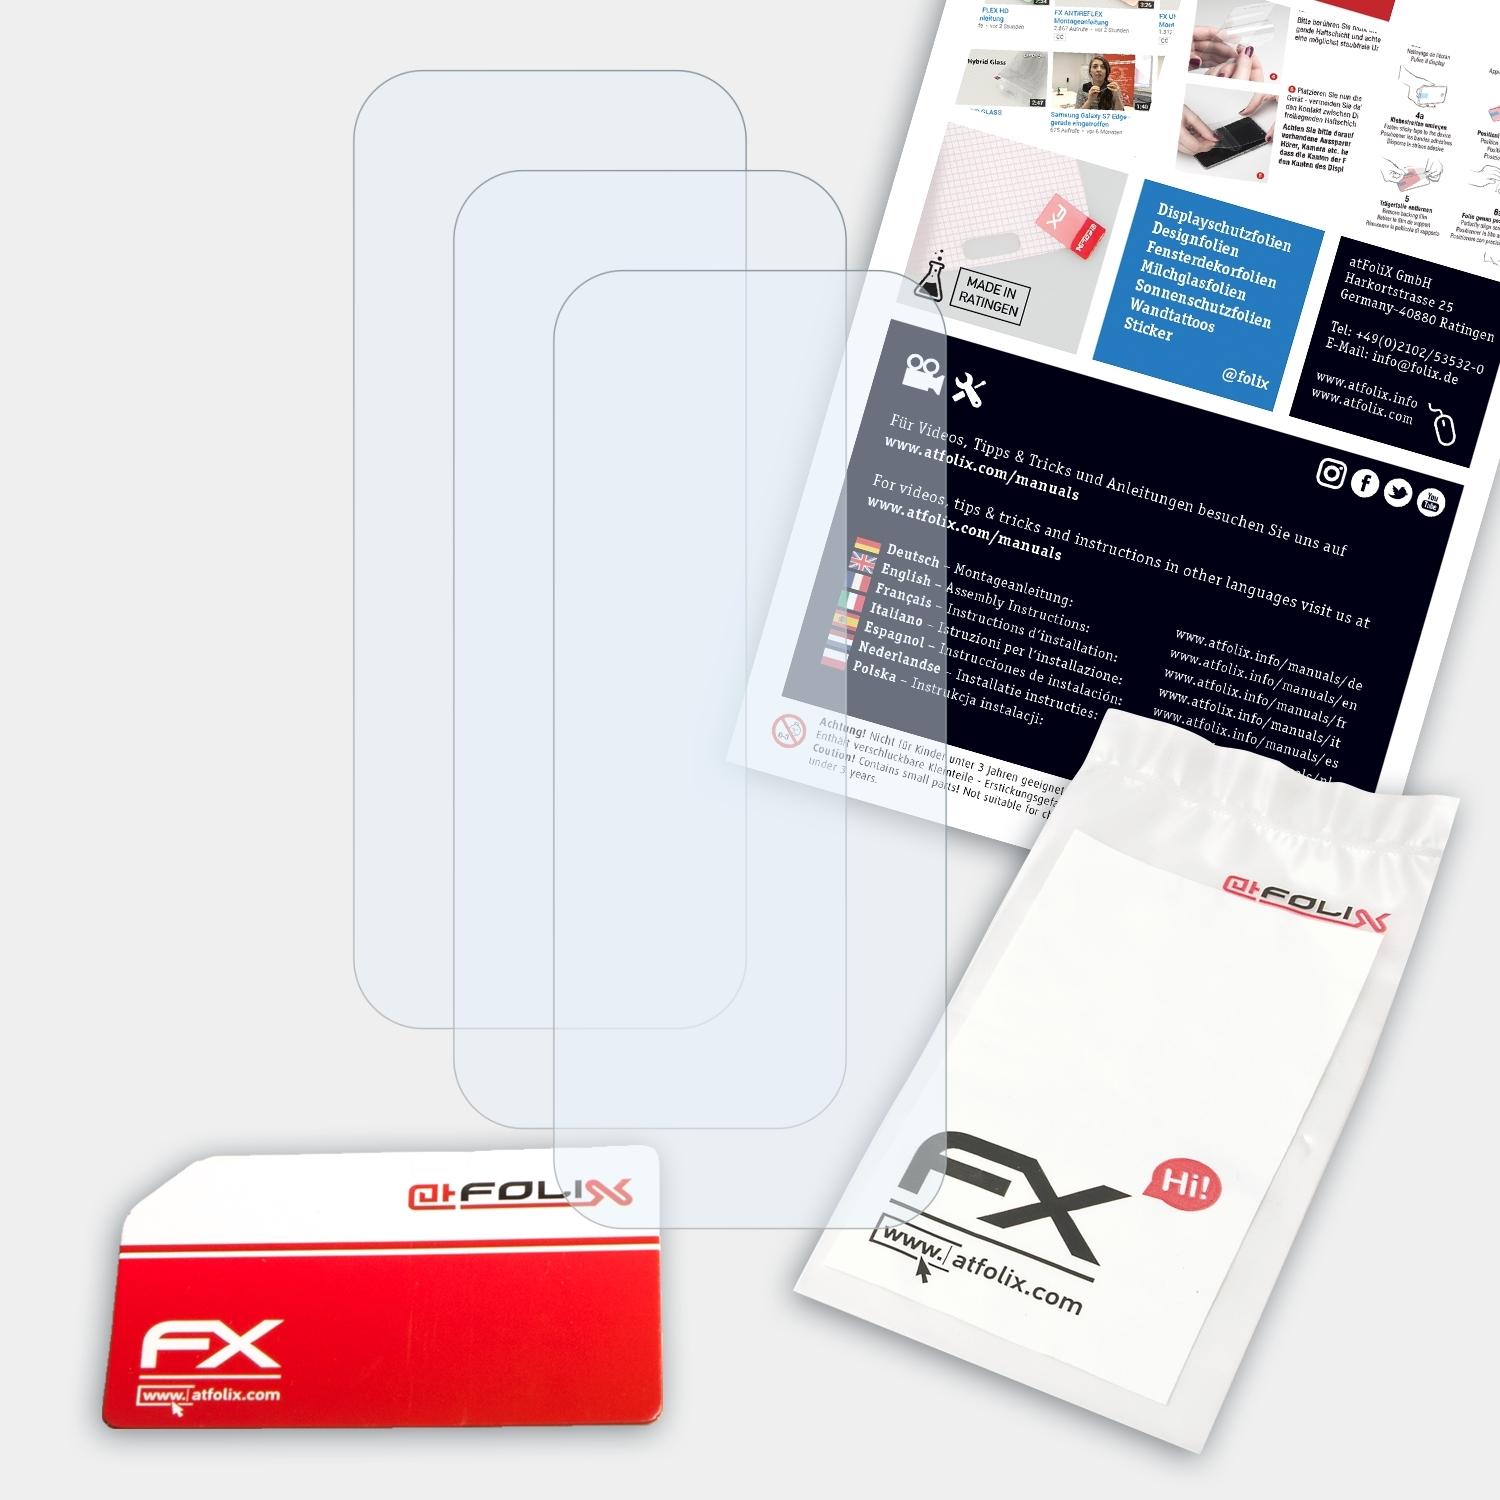 ATFOLIX 3x FX-Clear Displayschutz(für Y12s Vivo Lens (2021))